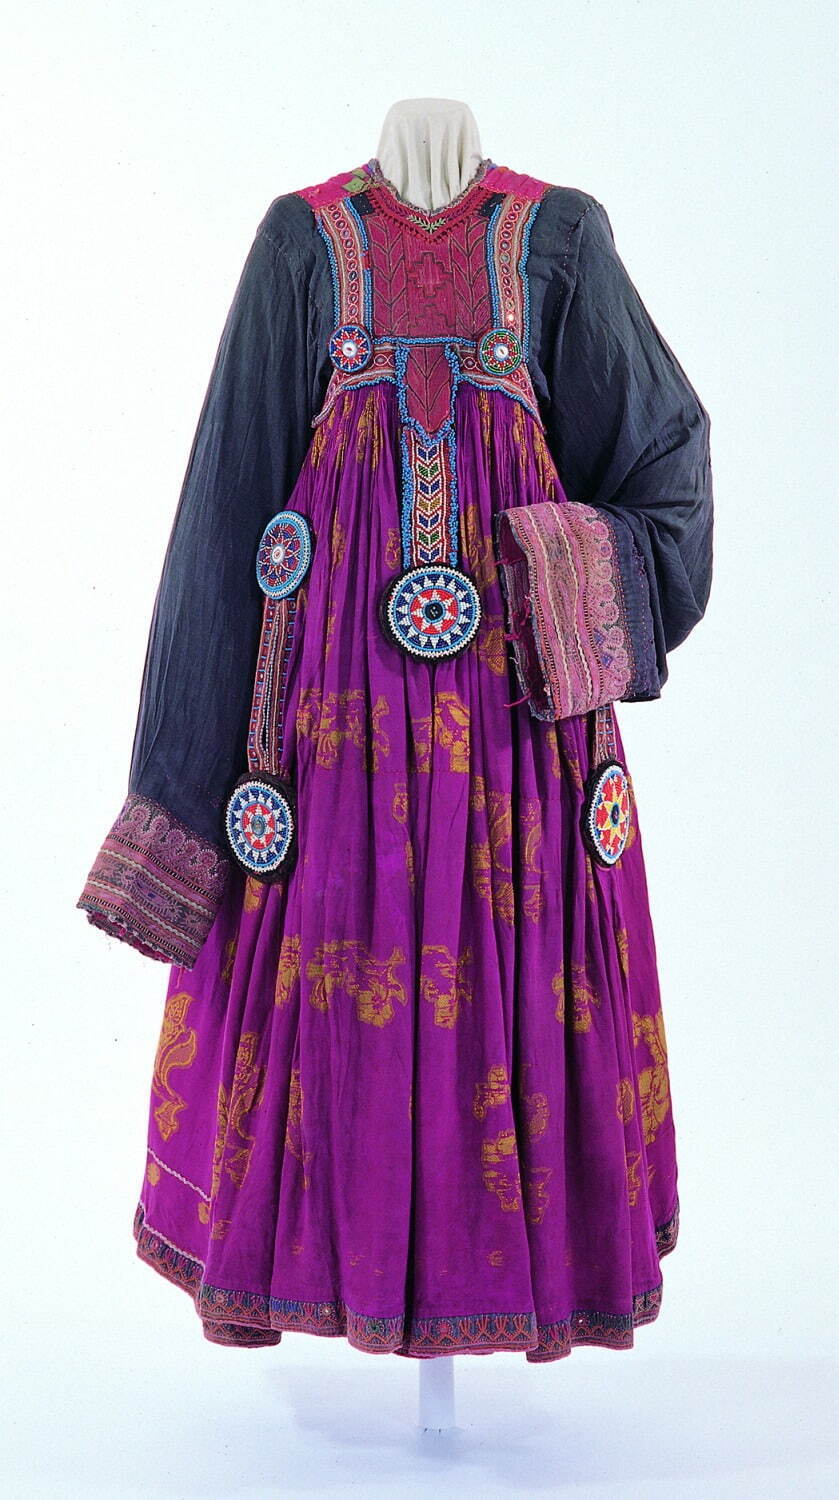 民族衣装 の展覧会 文化学園服飾博物館で 世界の民族衣装の探求 受容の軌跡を辿る ファッションプレス